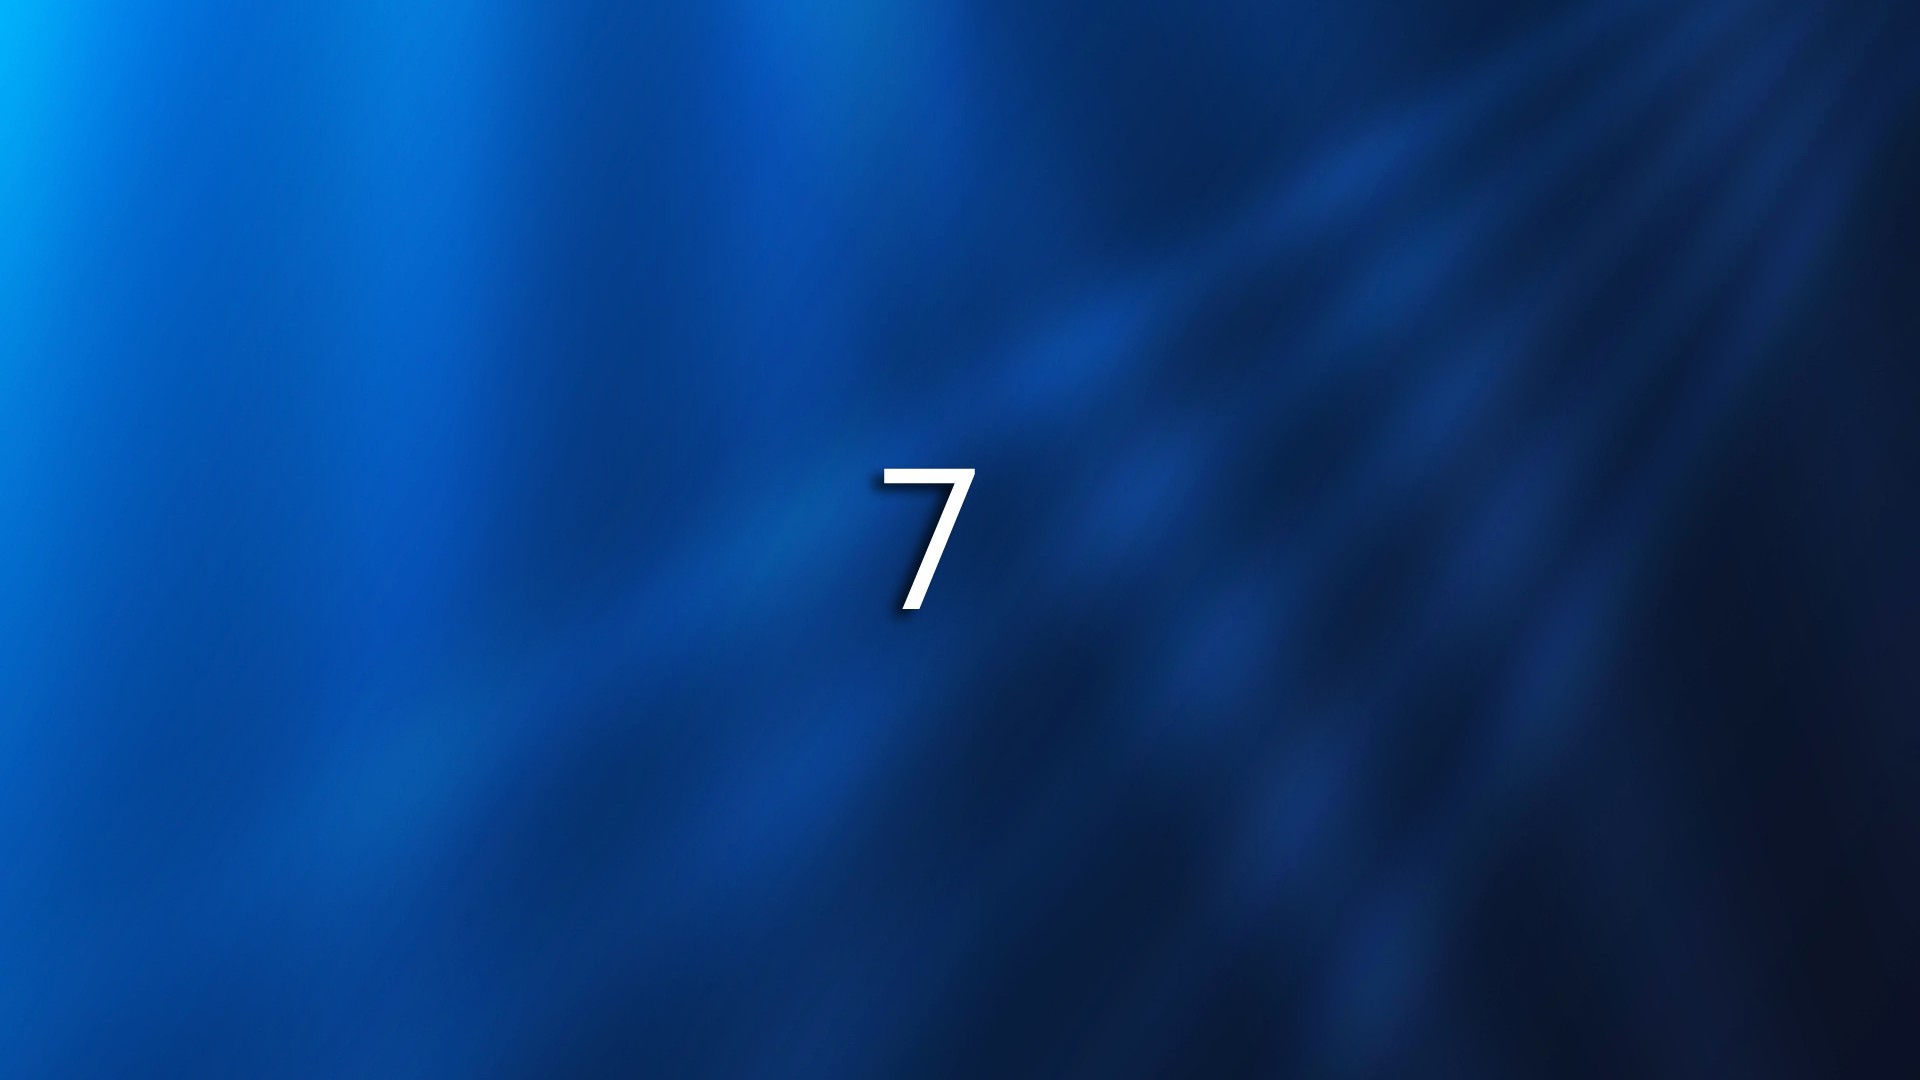 Windows7 Fond d'écran thème (1) #2 - 1920x1080